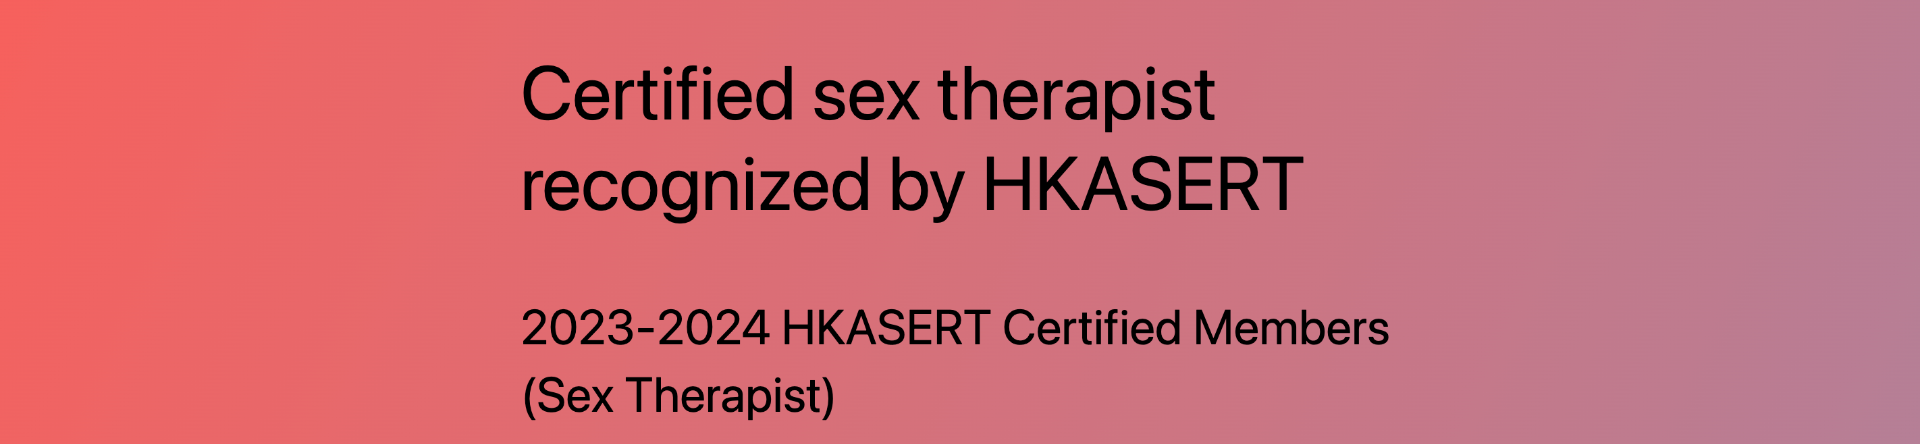 香港性教育、研究及治療專業協會認可性治療師